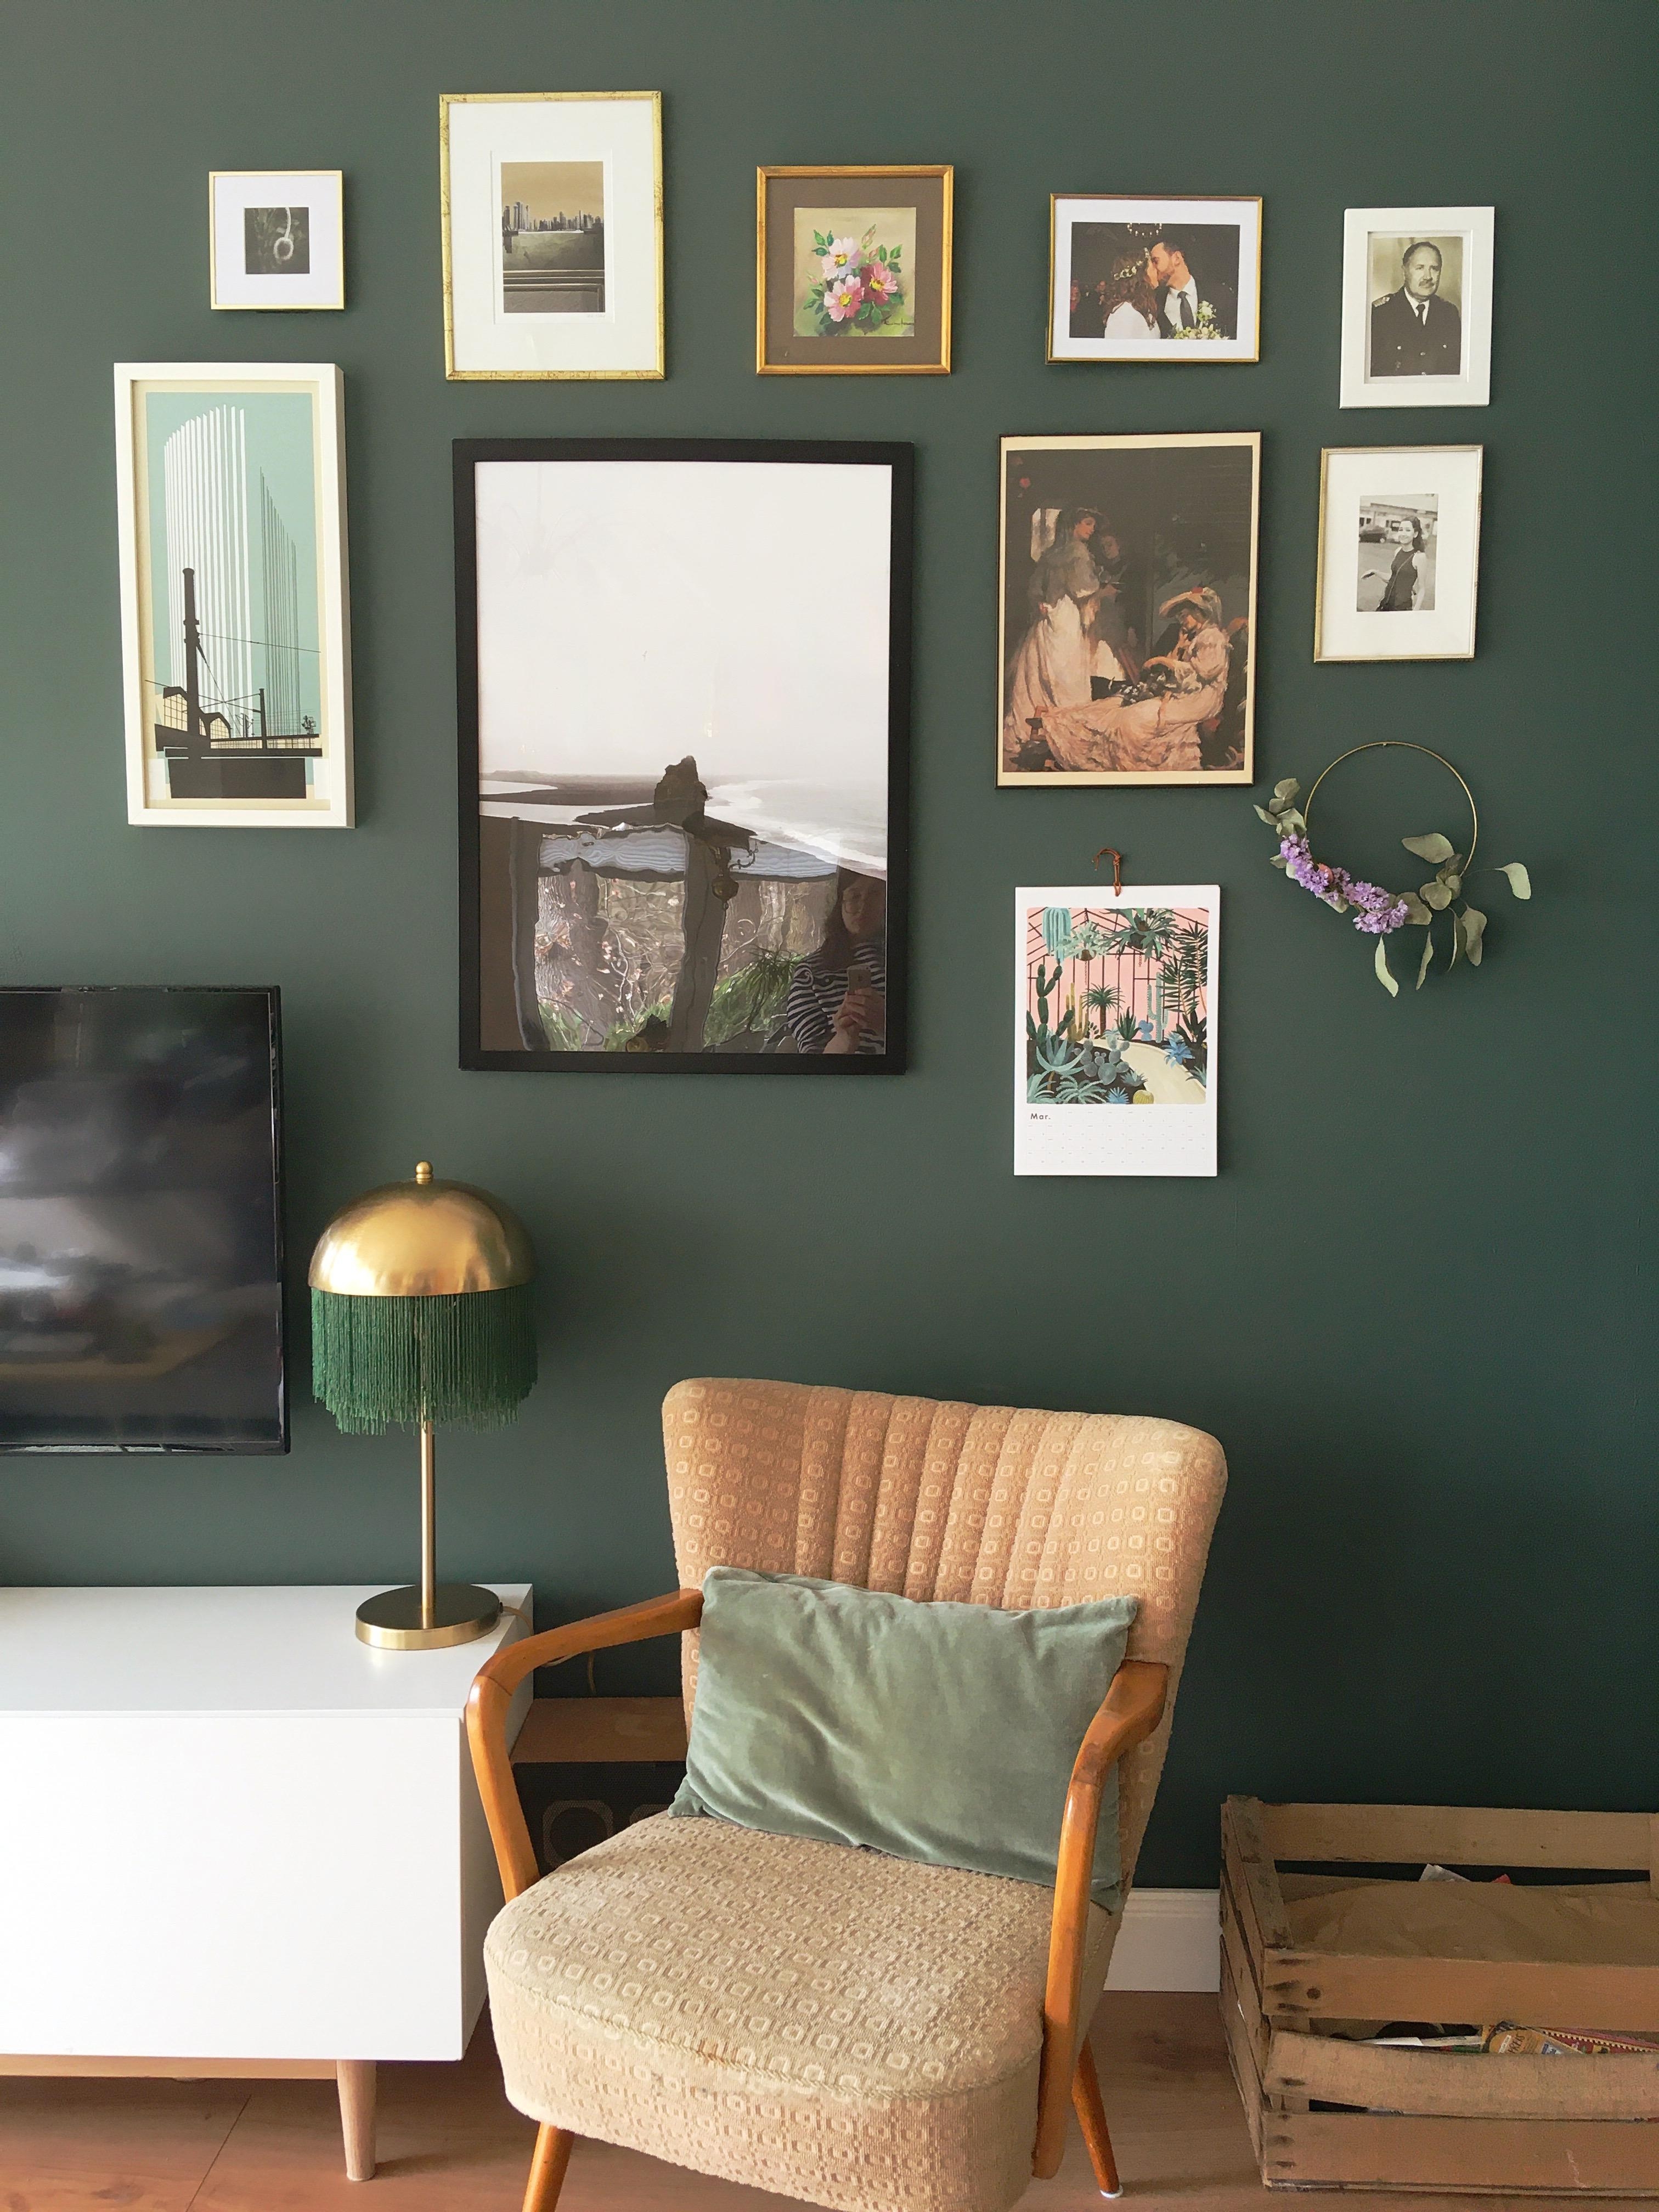 Ich liebe am meisten unsere #wanddeko im #wohnzimmer auf unserer grünen Wand.
#livingchallenge